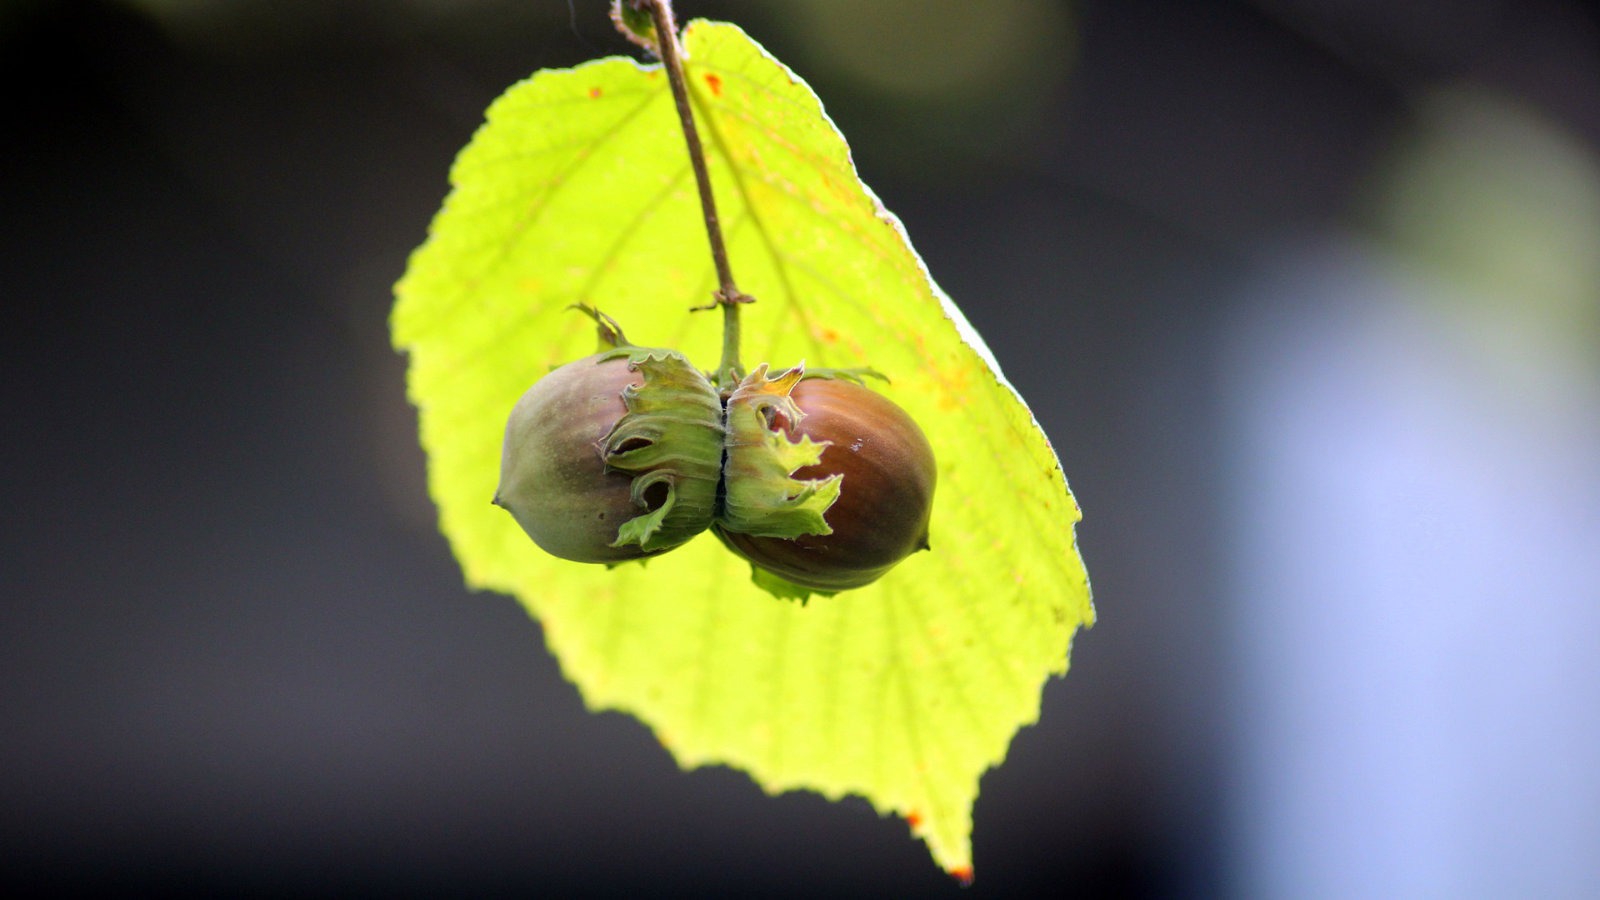 Hazelnuts with leaf